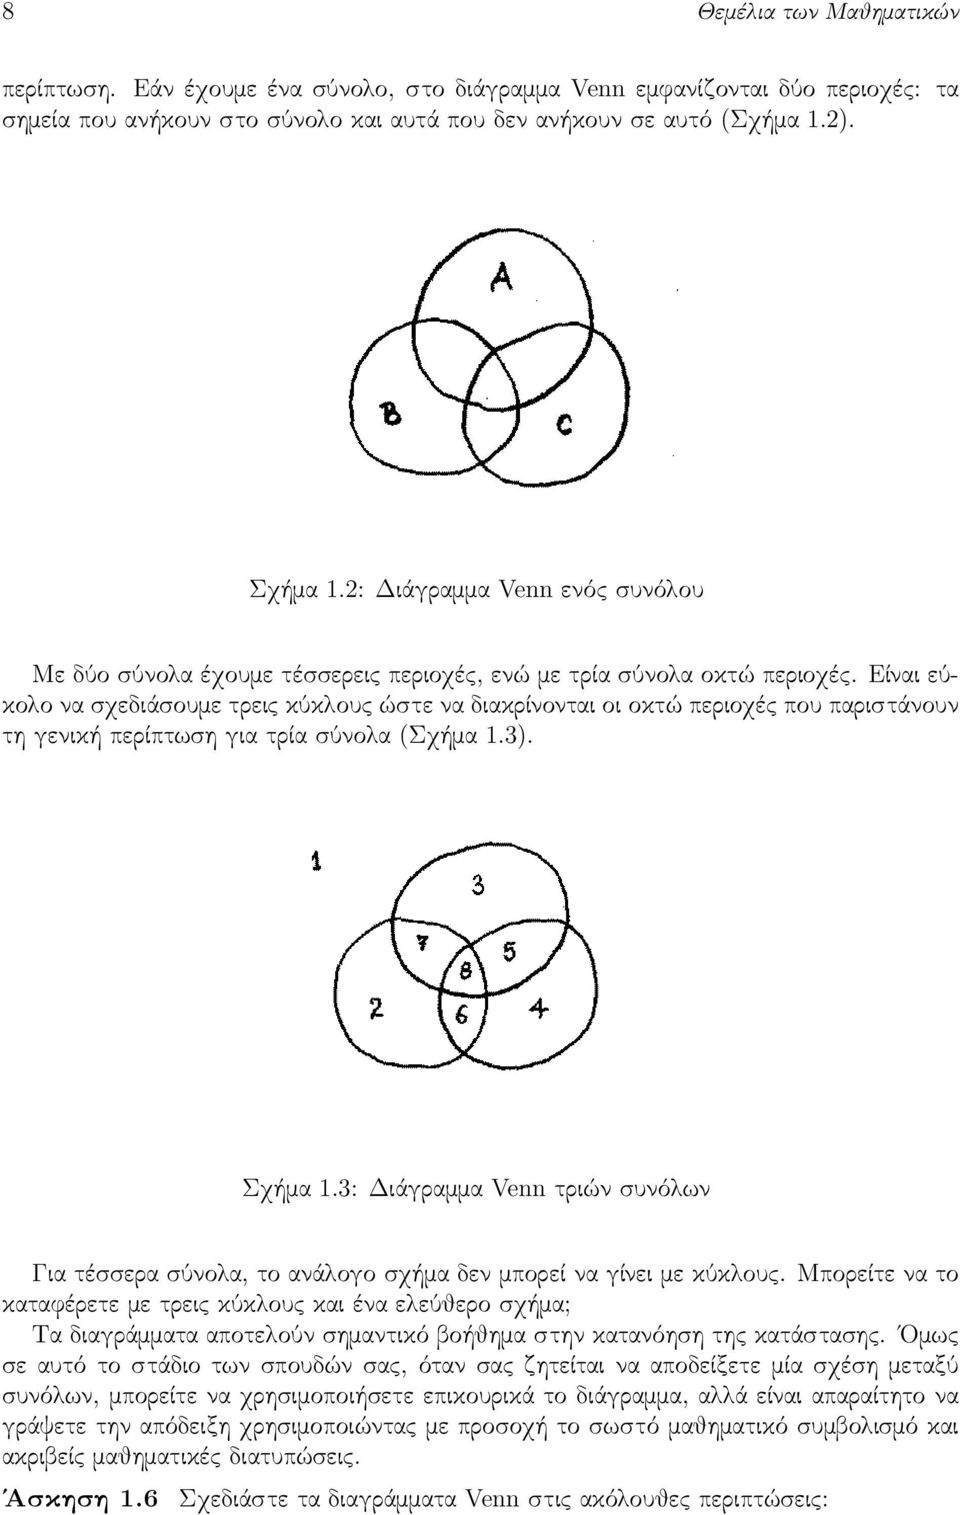 Είναι εύκολο να σχεδιάσουμε τρεις κύκλους ώστε να διακρίνονται οι οκτώ περιοχές που παριστάνουν τη γενική περίπτωση για τρία σύνολα (Σχήμα 1.3). Σχήμα 1.